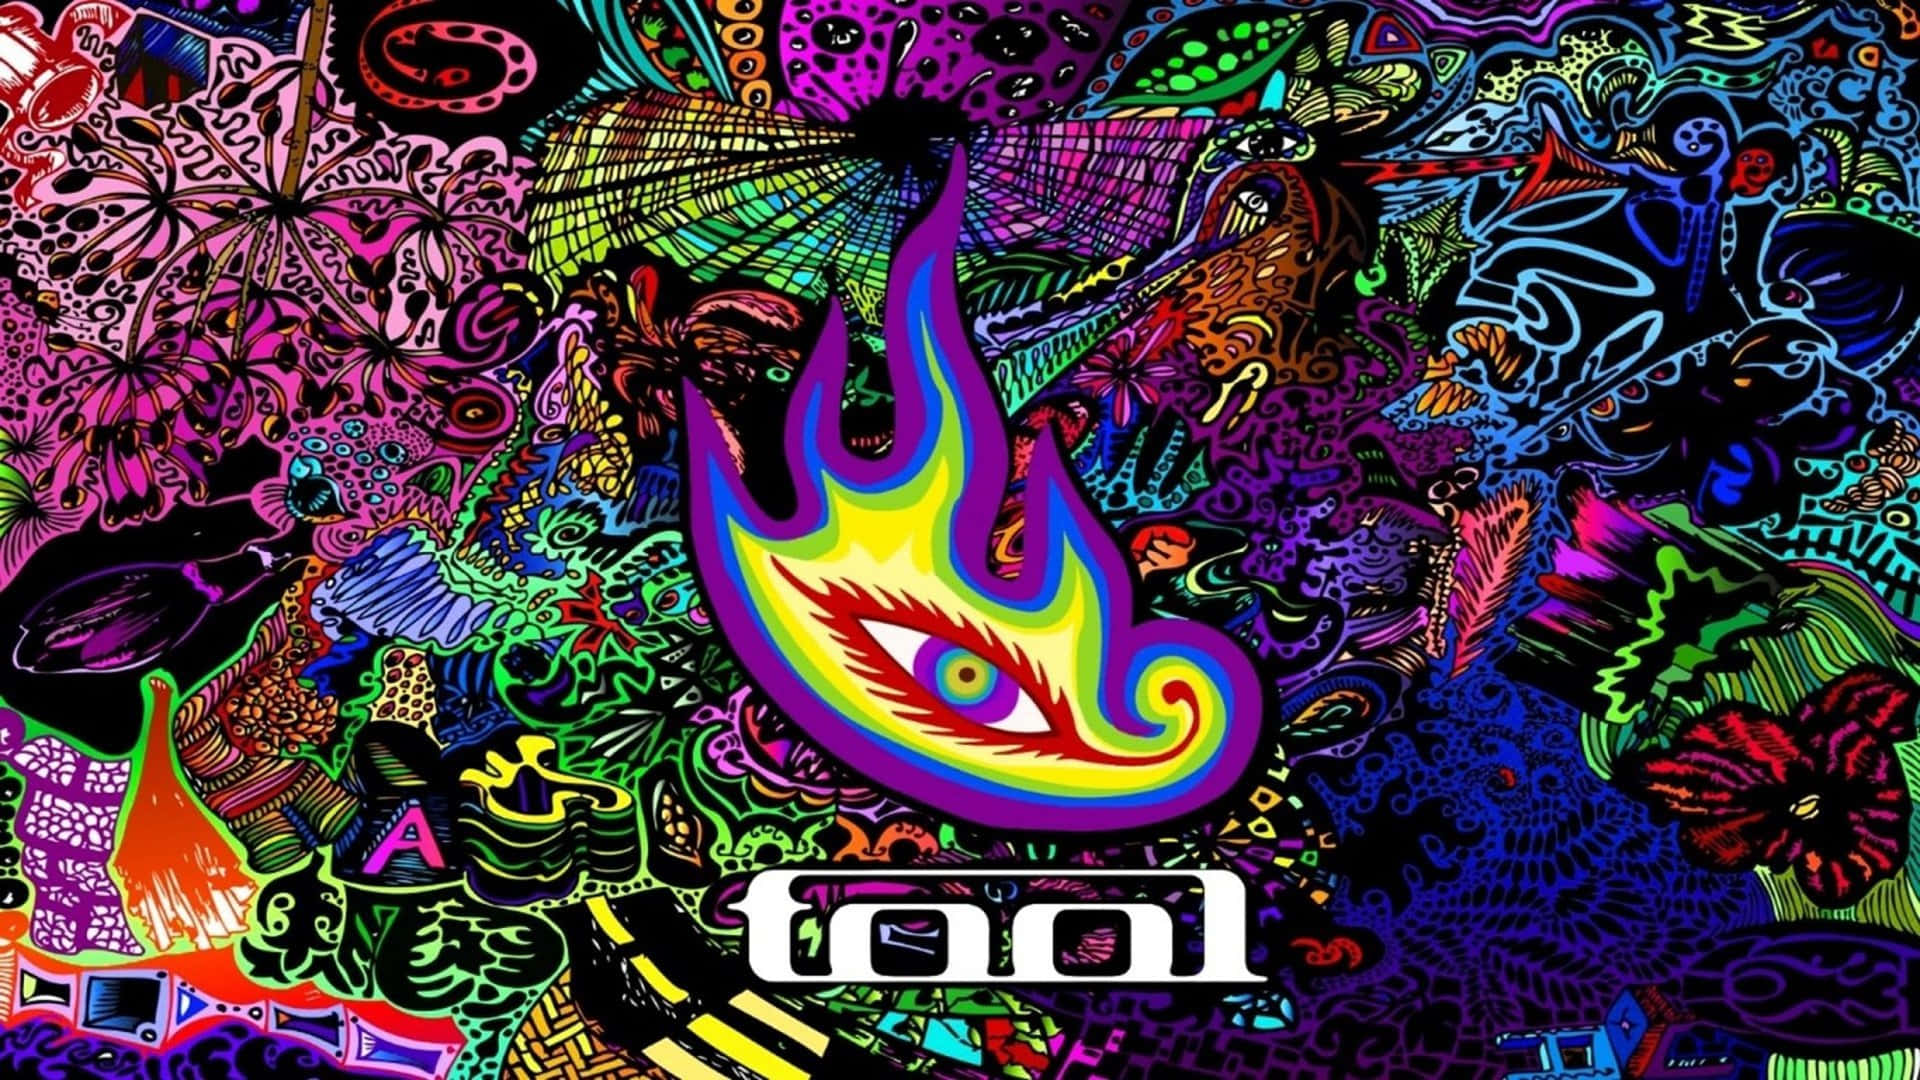 Den ikoniske amerikanske prog-rock band Tool optræder på scenen, charmere publikum med deres unikke blanding af heavy metal, alternative rock og prog-rock. Wallpaper